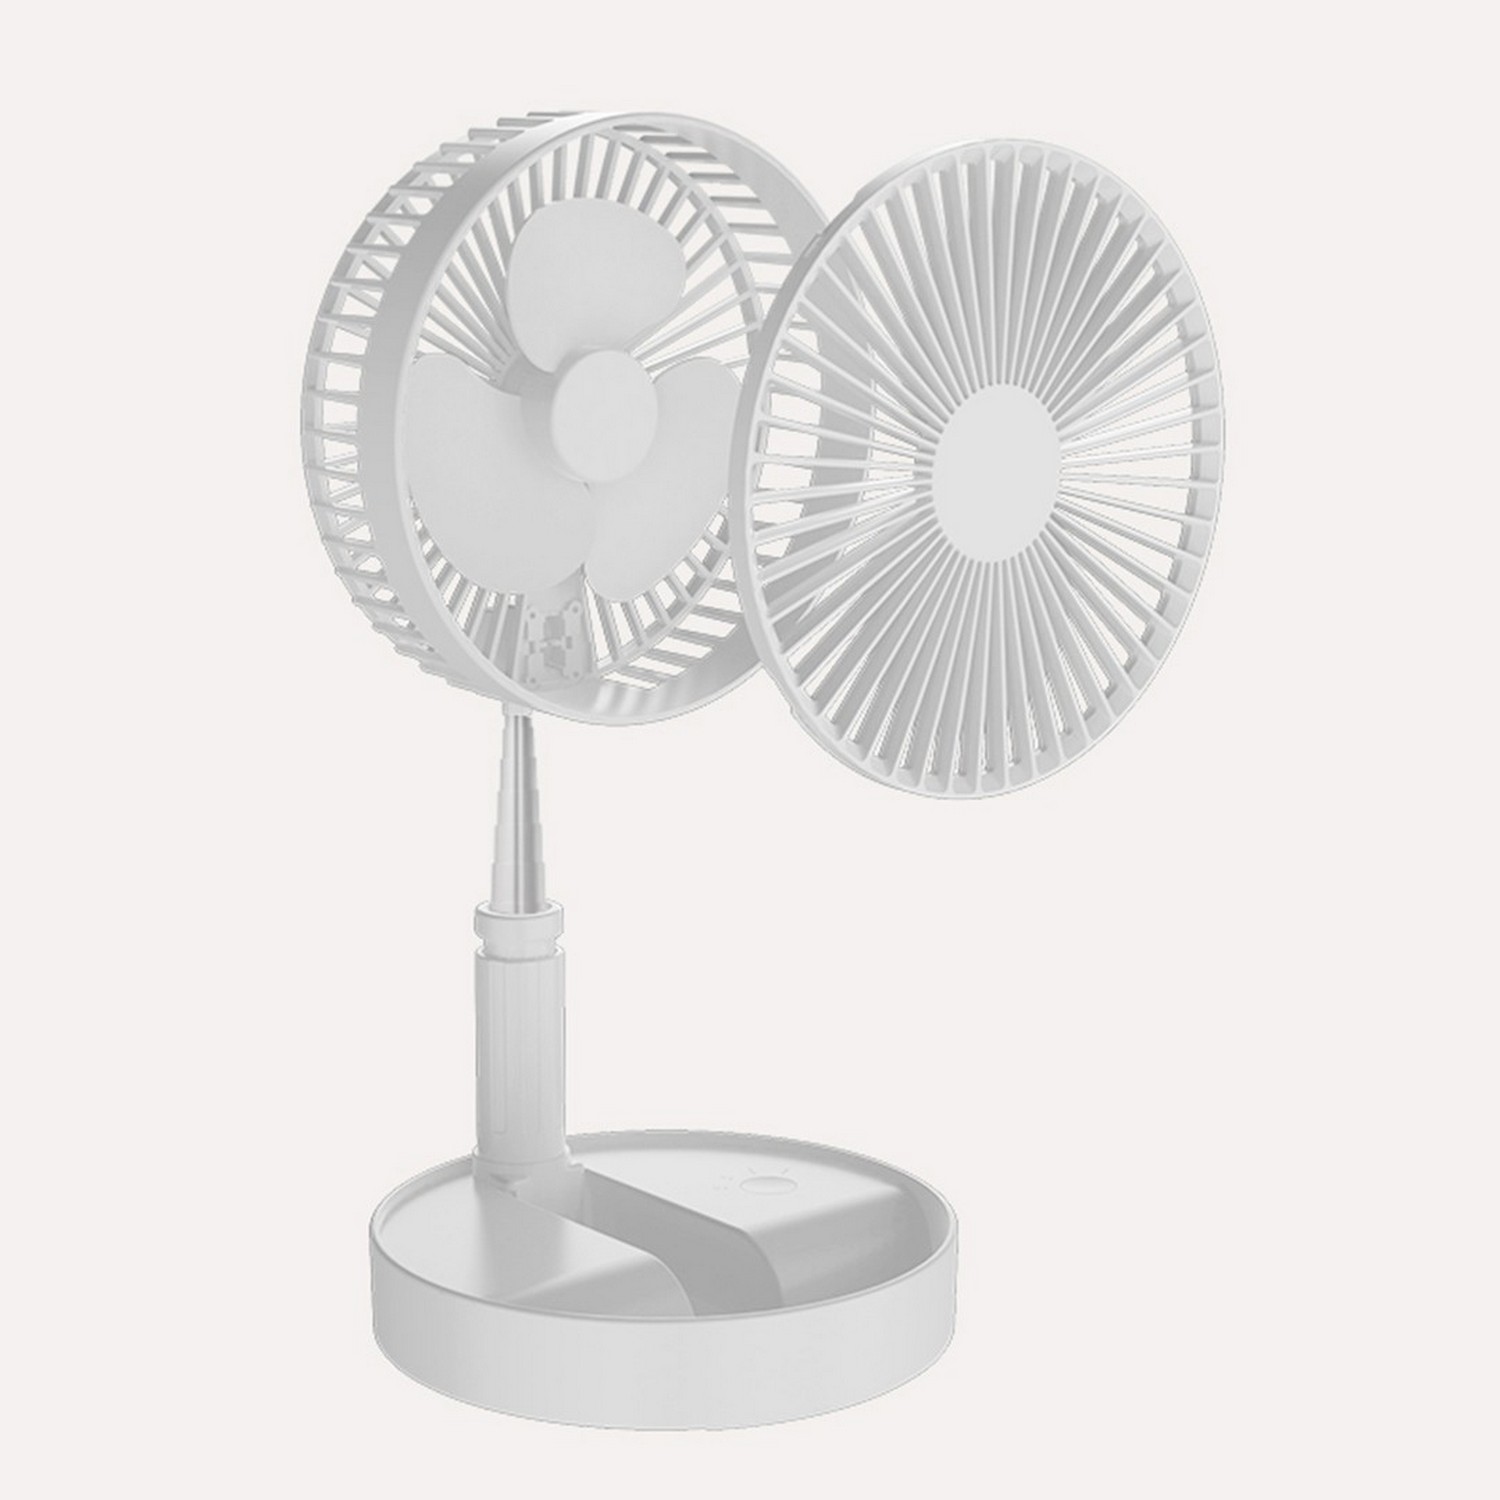 Вентилятор Xiaomi AIR MATE (AH14) отзывы - изображения 5